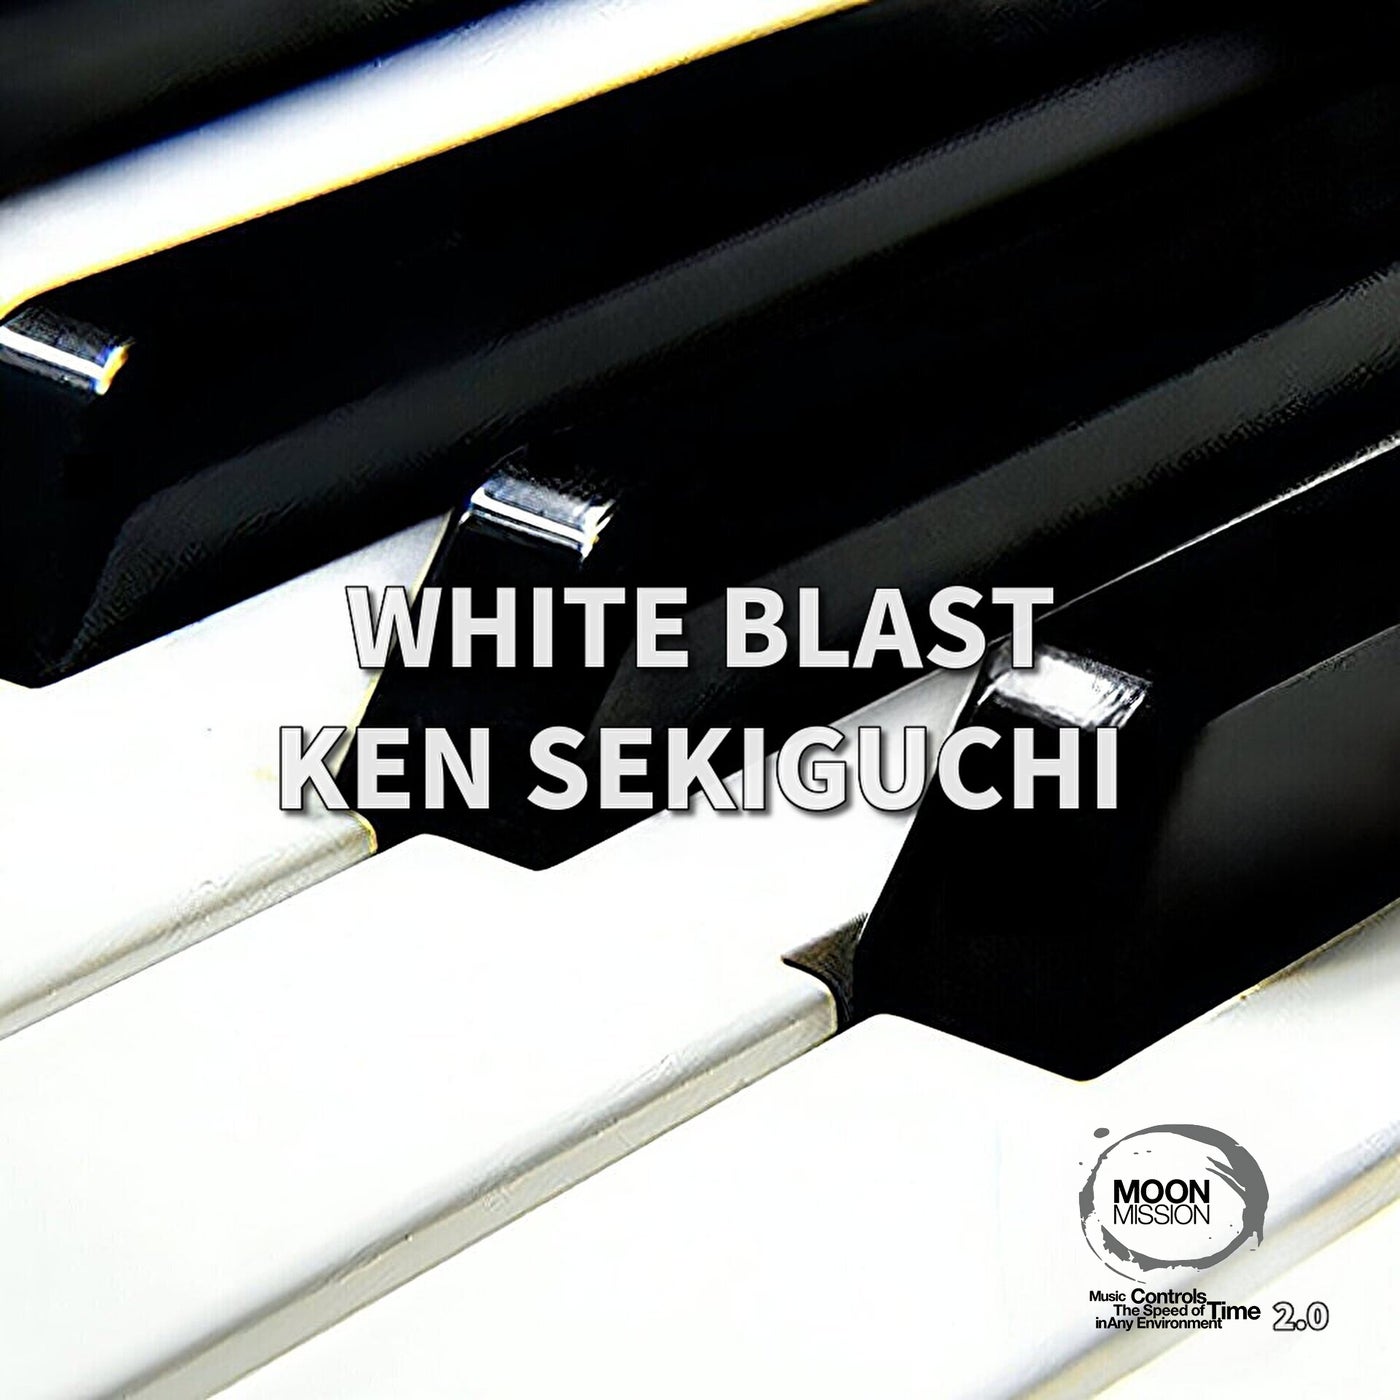 White Blast